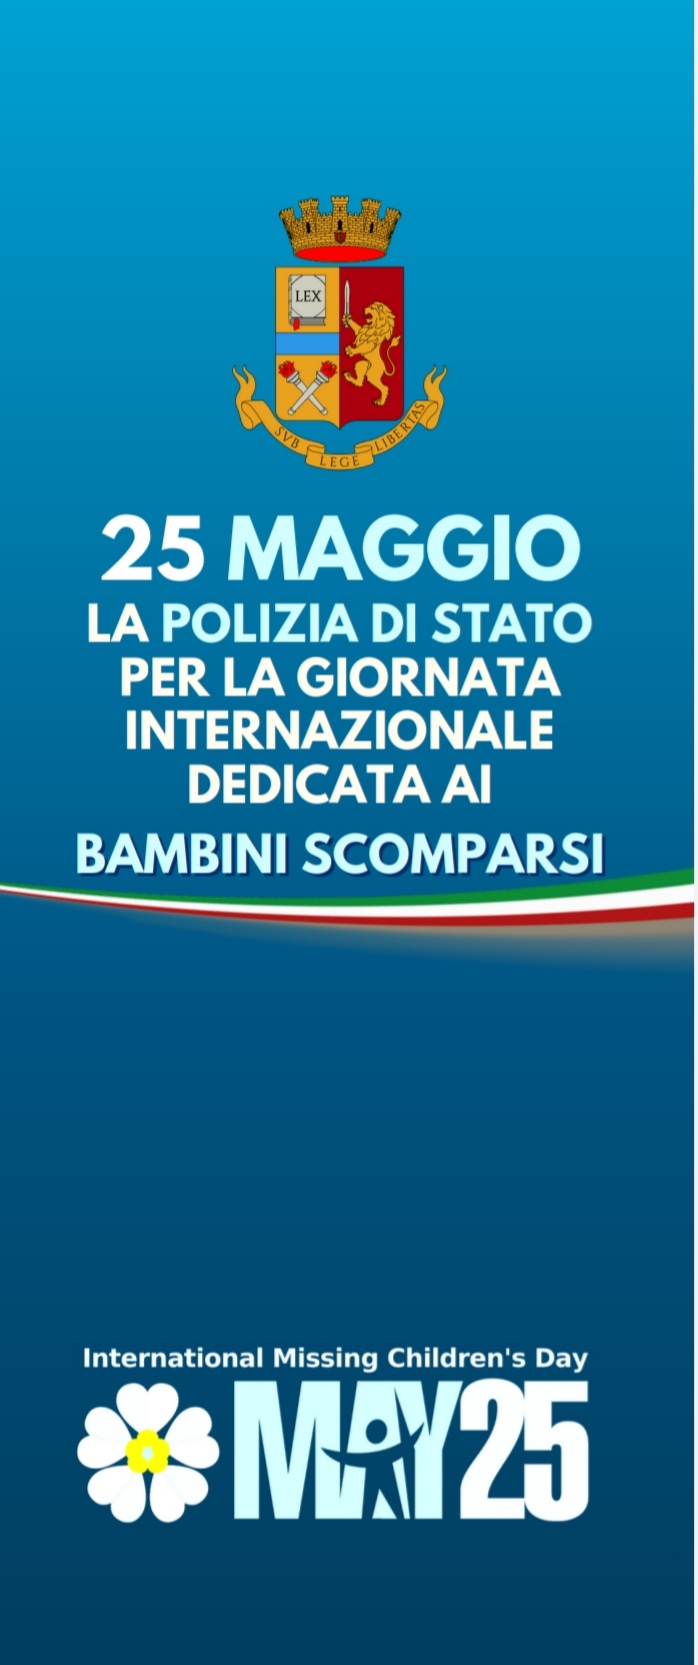 25 Maggio-La Polizia di Stato per la giornata internazionale dedicata ai bambini scomparsi.